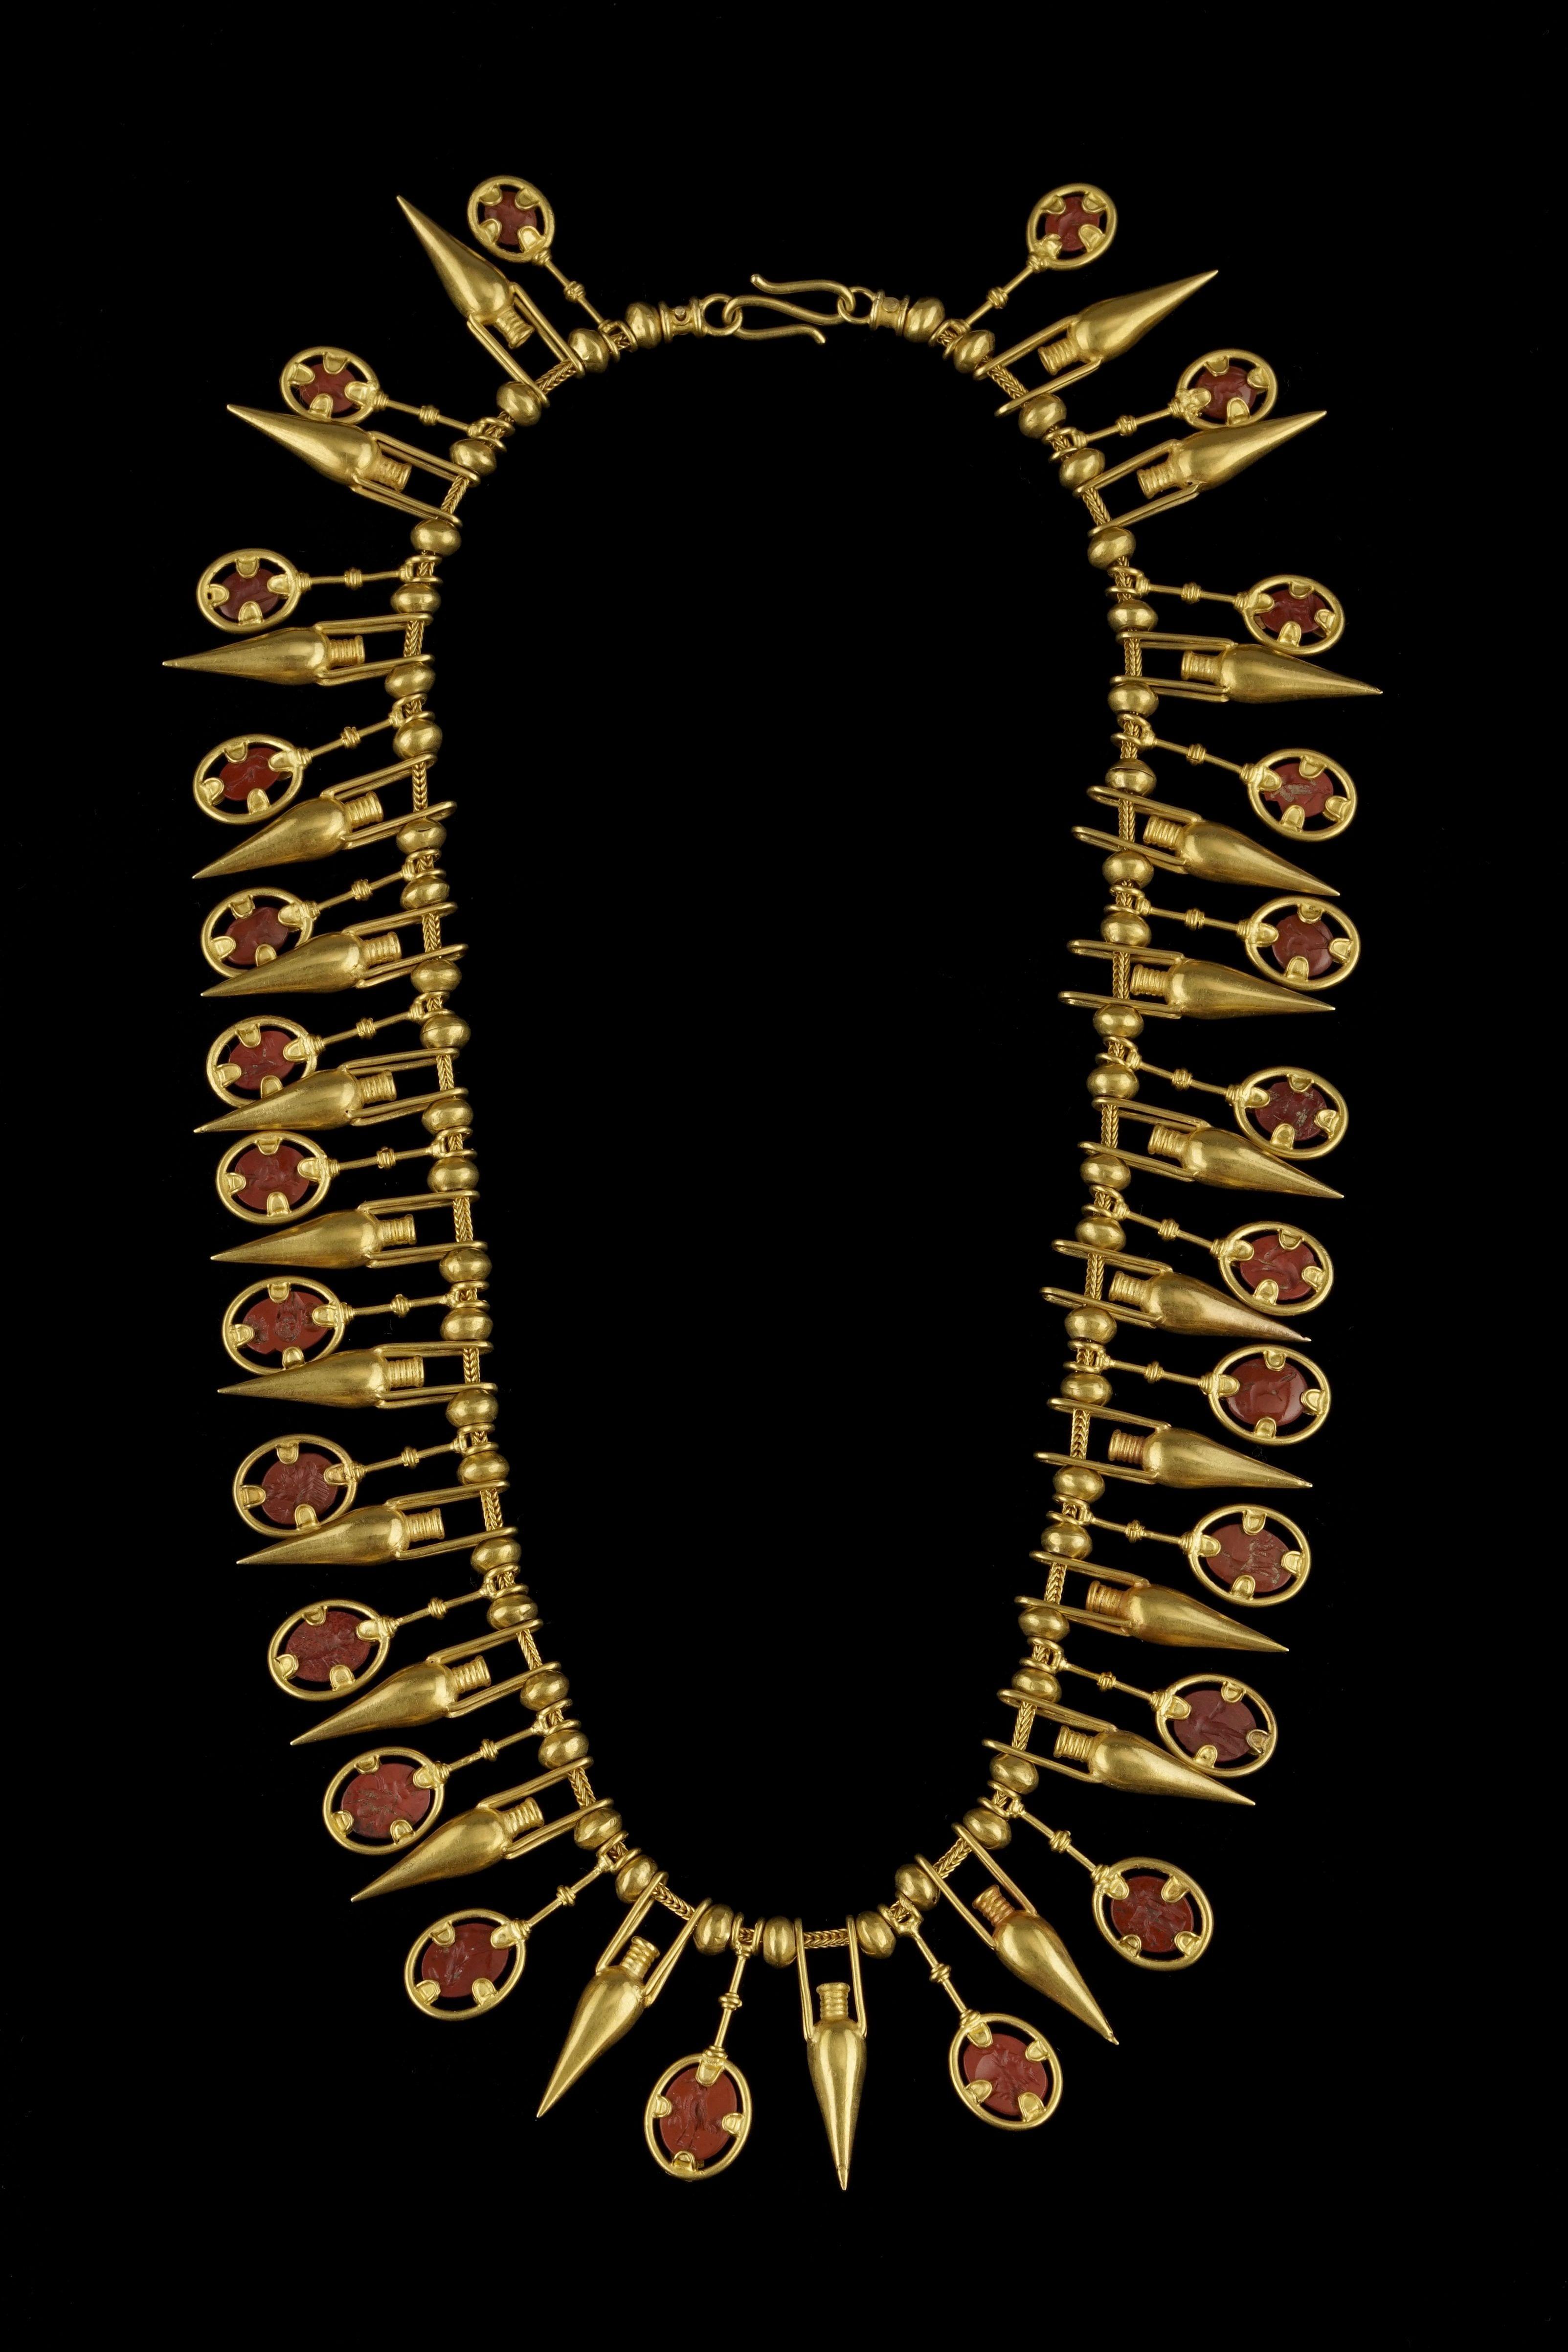 Castellani, collier d'inspiration étrusque serti d'intailles sur jaspe rouge intercalées d'amphores en or